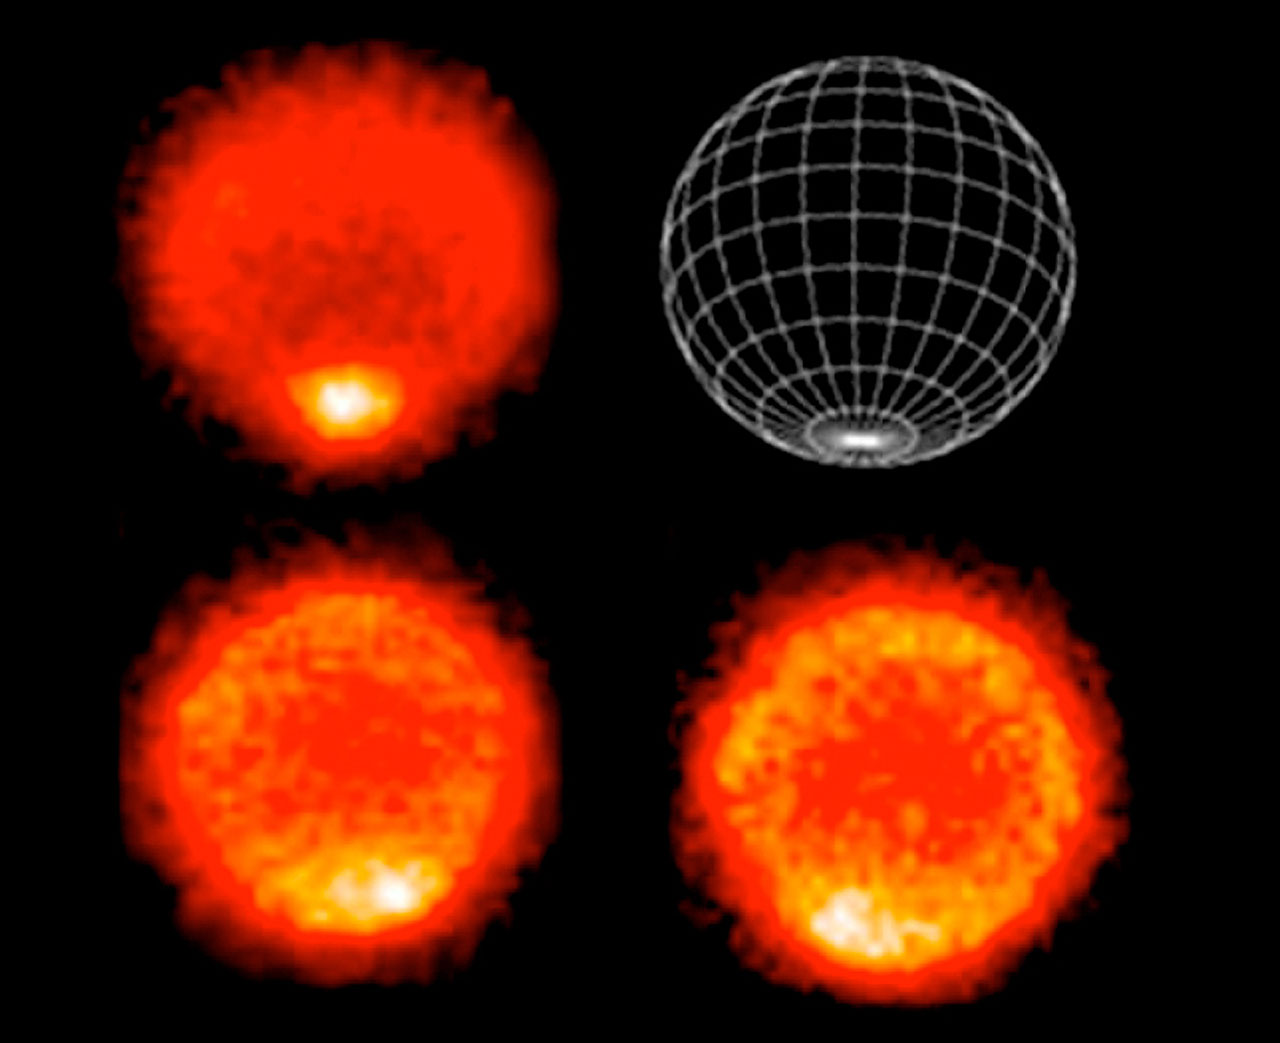 Les  images infrarouge ont été prises avec la caméra VISIR du VLT de l\'ESO. Ces cartes de la température montrent un pôle sud plus chaud. En haut à gauche, la carte représente les températures dans la troposphère. Les deux autres images montrent des températures dans la stratosphère, à plus haute altitude. L\'image en haut à droite permet de situer l\'emplacement du pôle sud.